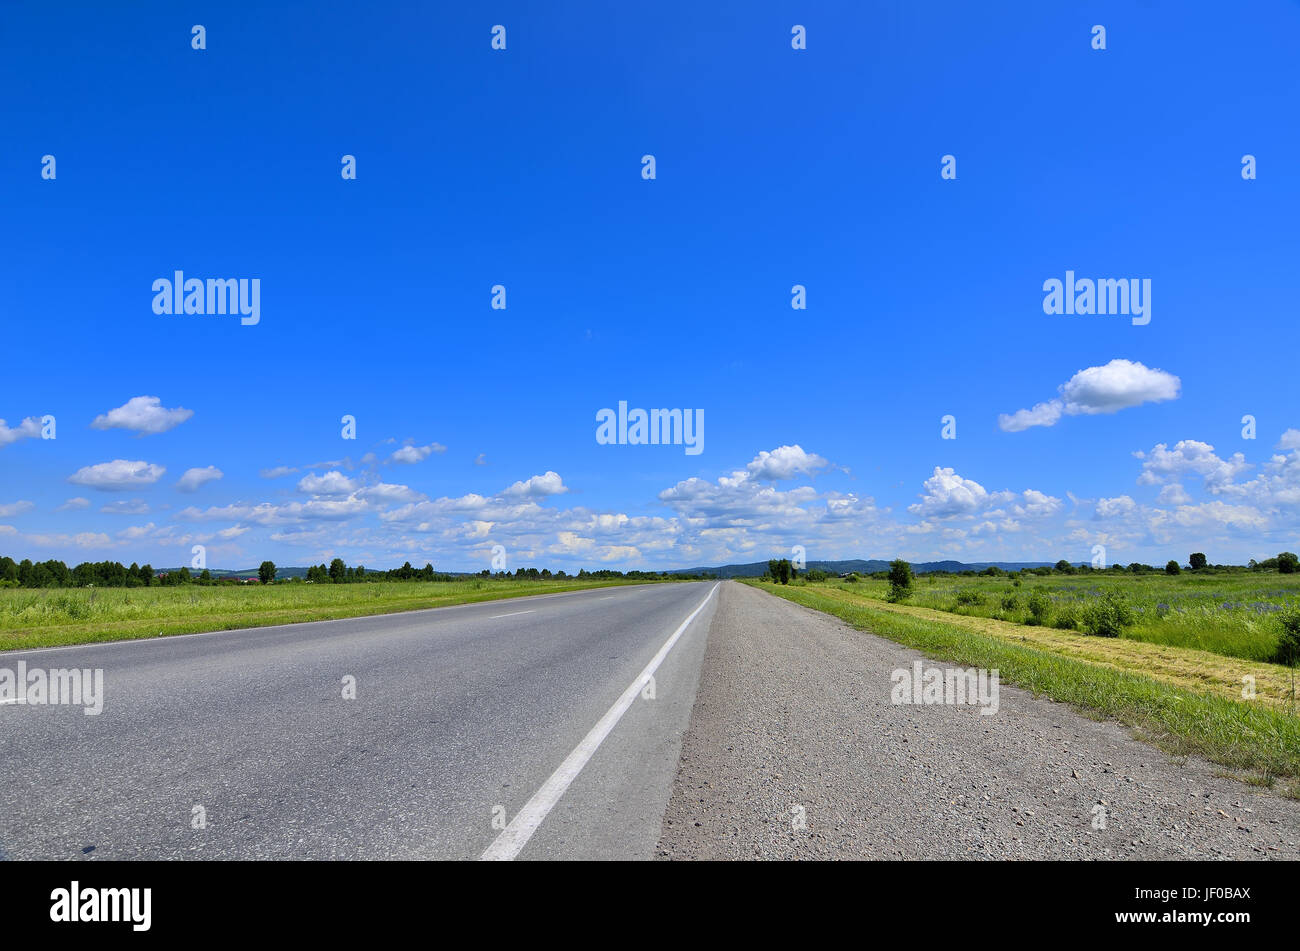 Straight empty road running to horizon Stock Photo